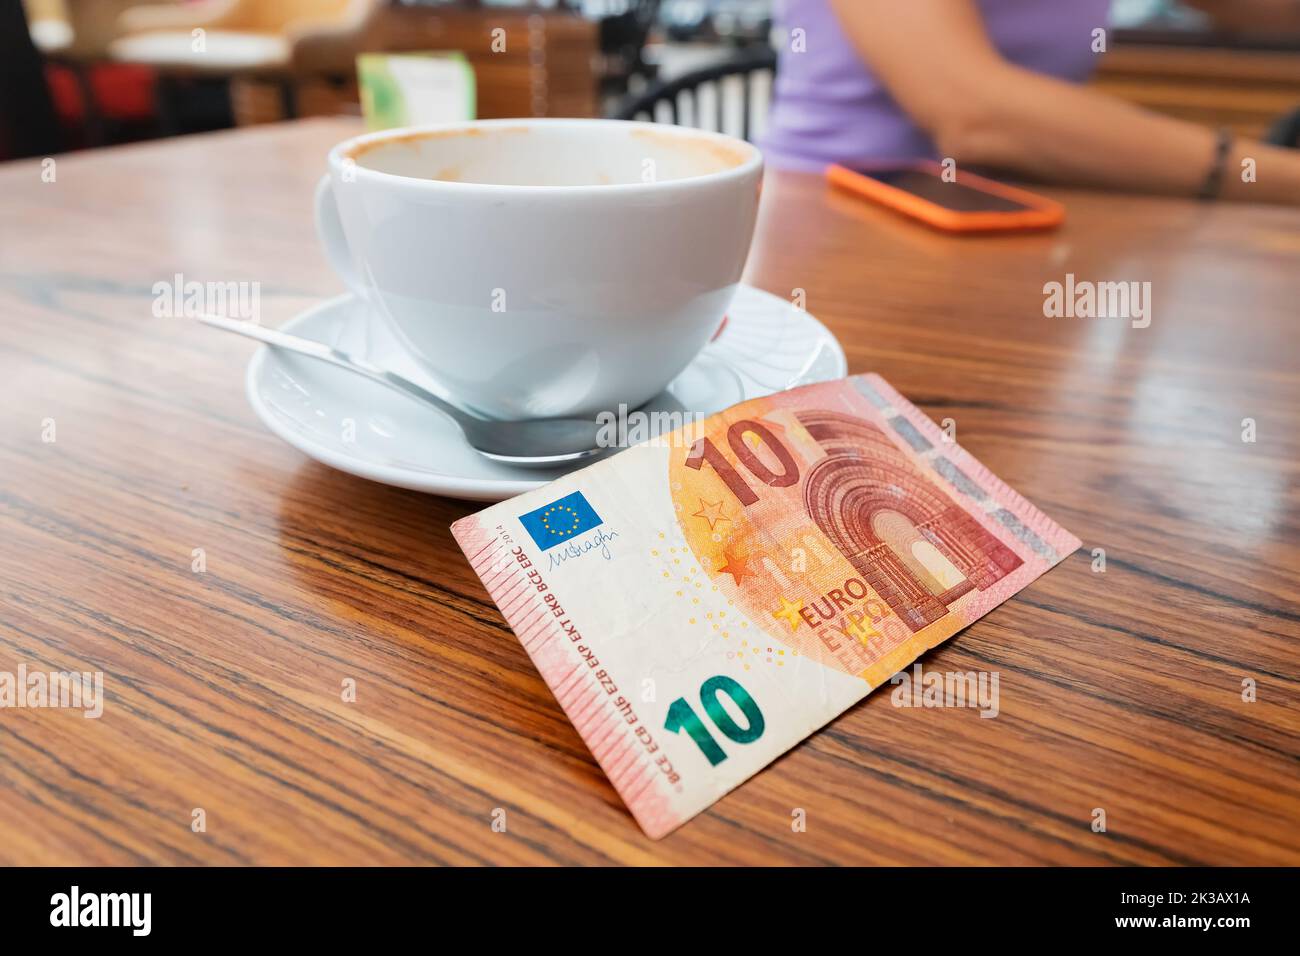 Le client a laissé un généreux pourboire après le petit déjeuner dans le café. Un billet de dix euros sur une table Banque D'Images